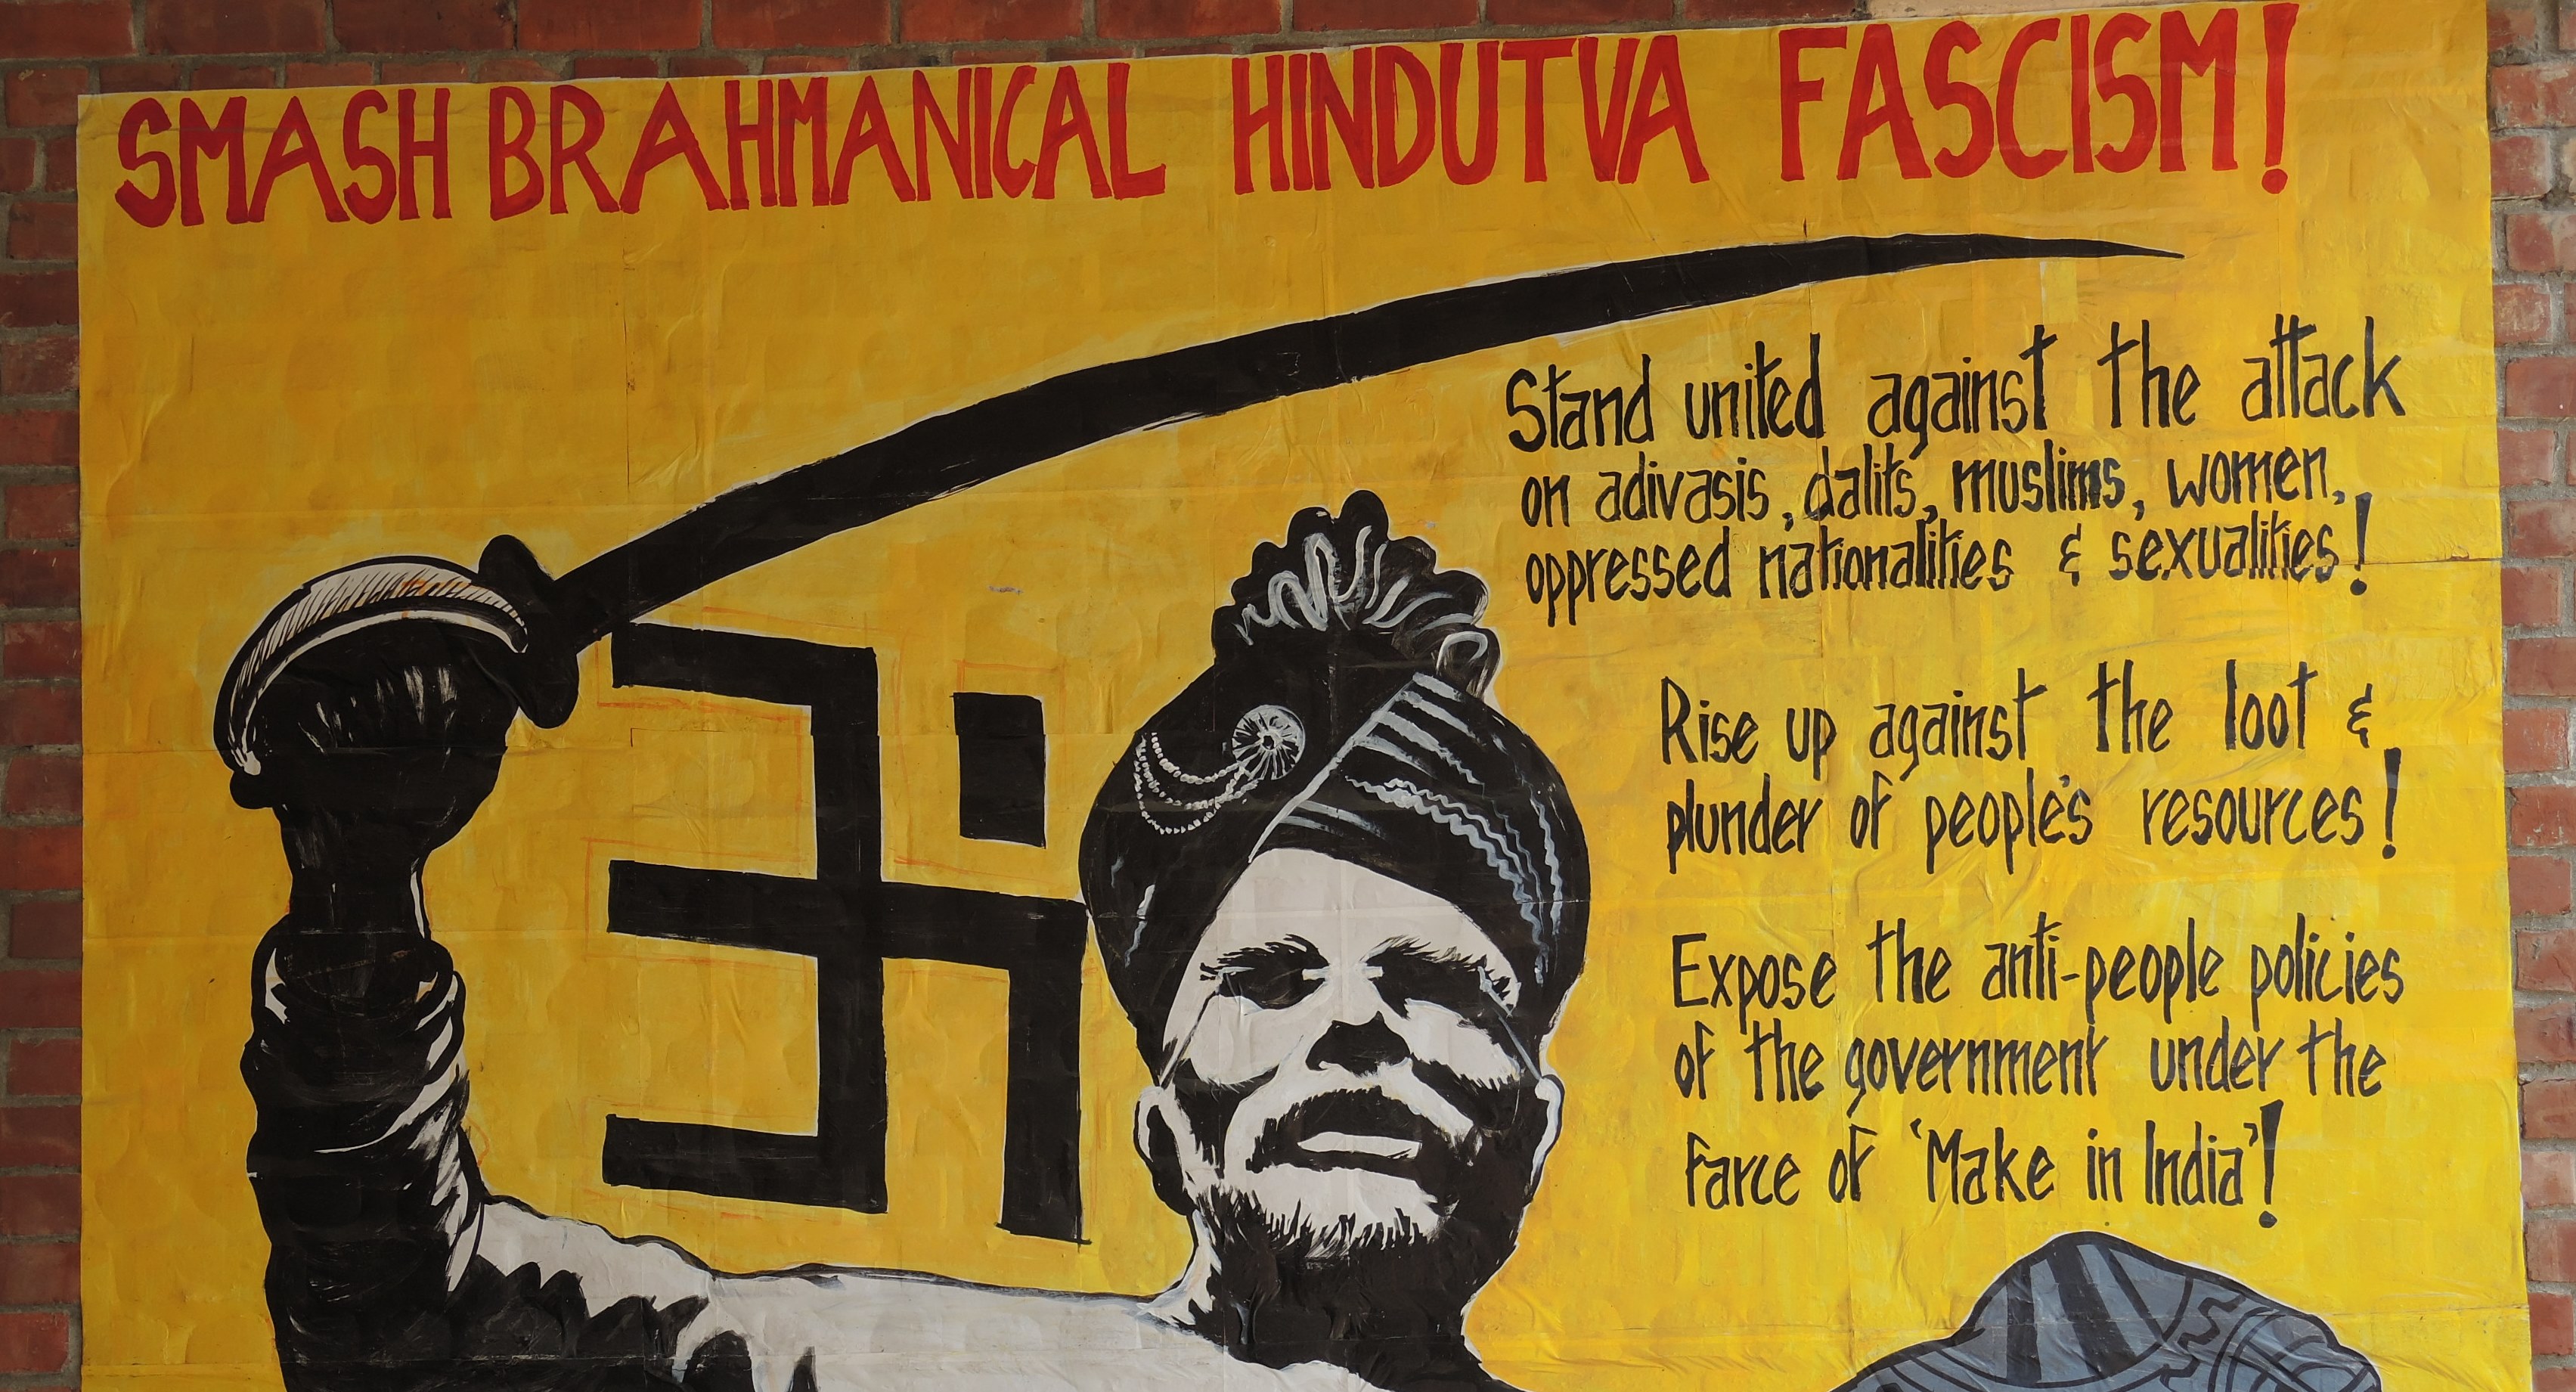 لوحة جدارية سياسية في جامعة جواهرلال نهرو في نيودلهي في الهند ضد رئيس الوزراء مودي.  (photo: Dominik Muller)